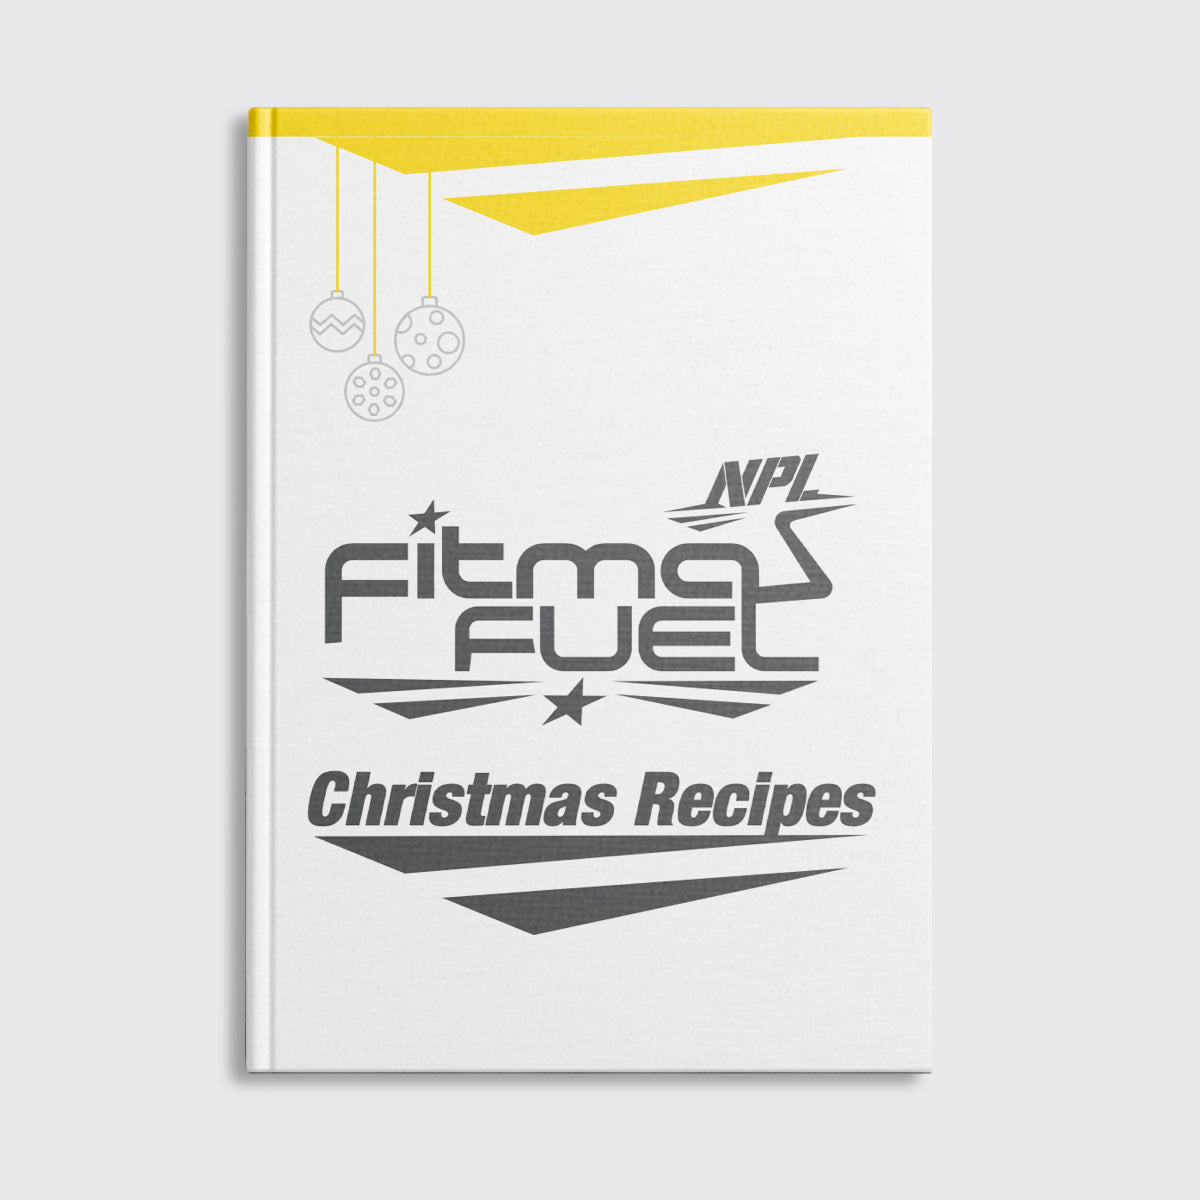 NPL Christmas Recipes